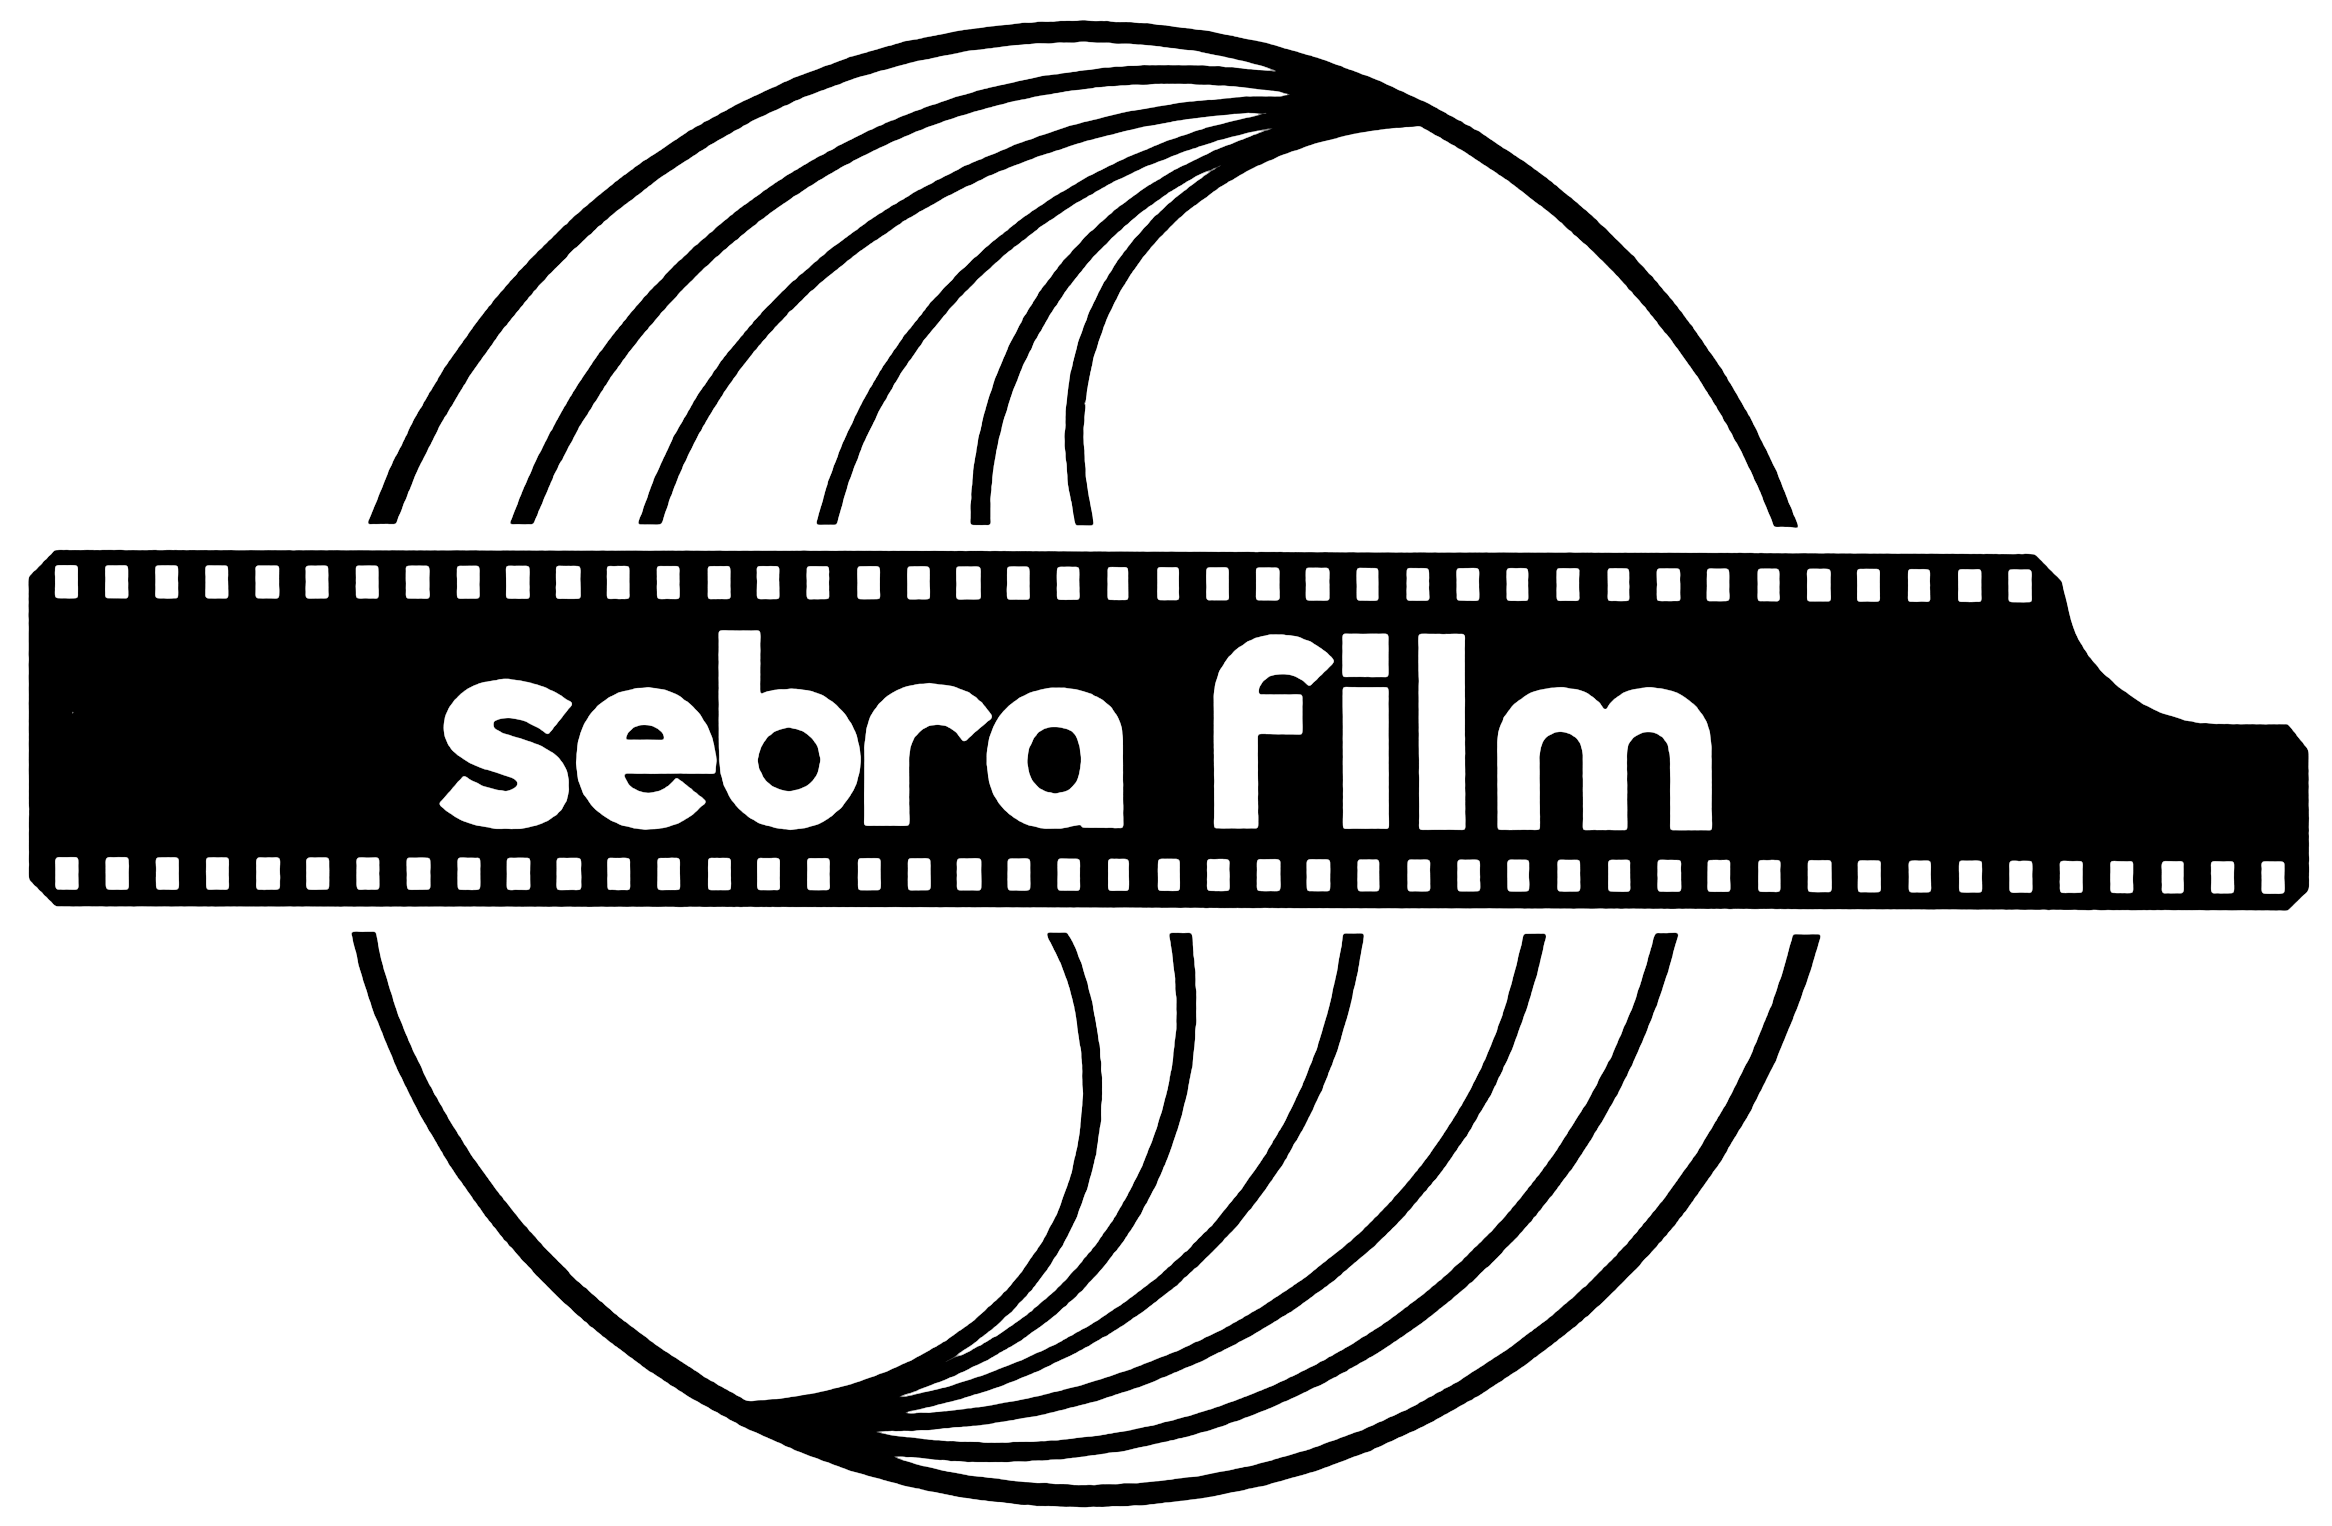 Sebra-film logo